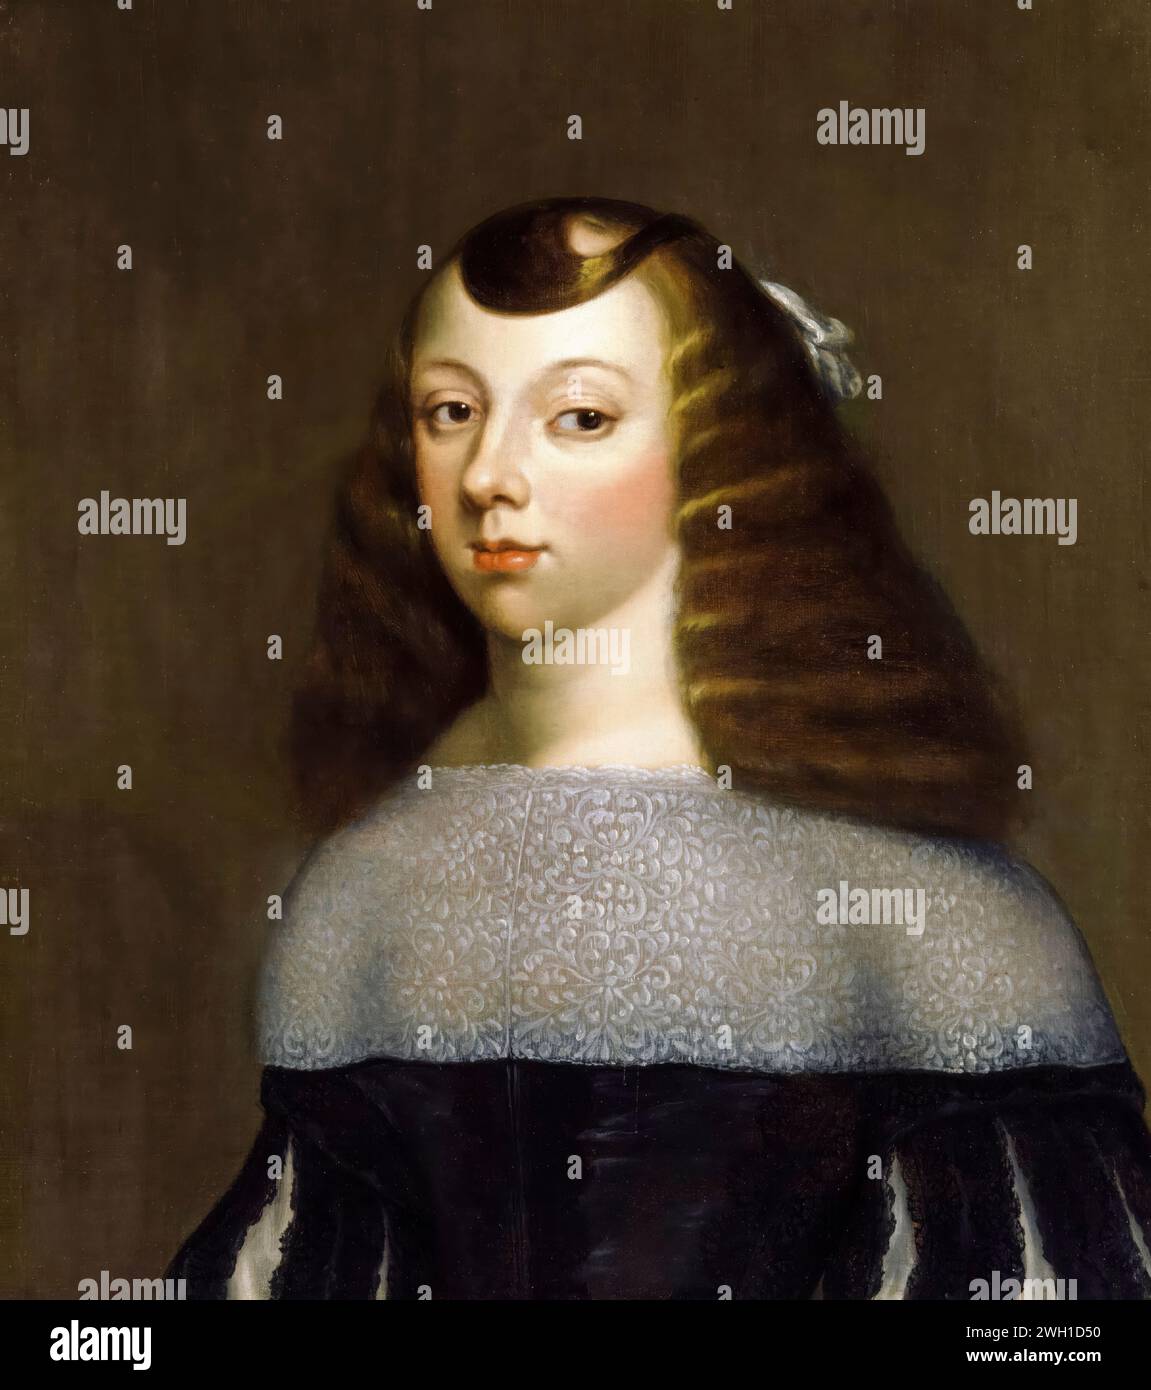 Caterina di Braganza (1638-1705), Regina consorte d'Inghilterra, Scozia e Irlanda (1662-1685), ritratto a olio su tela dopo Dirk Stoop, 1660-1661 Foto Stock